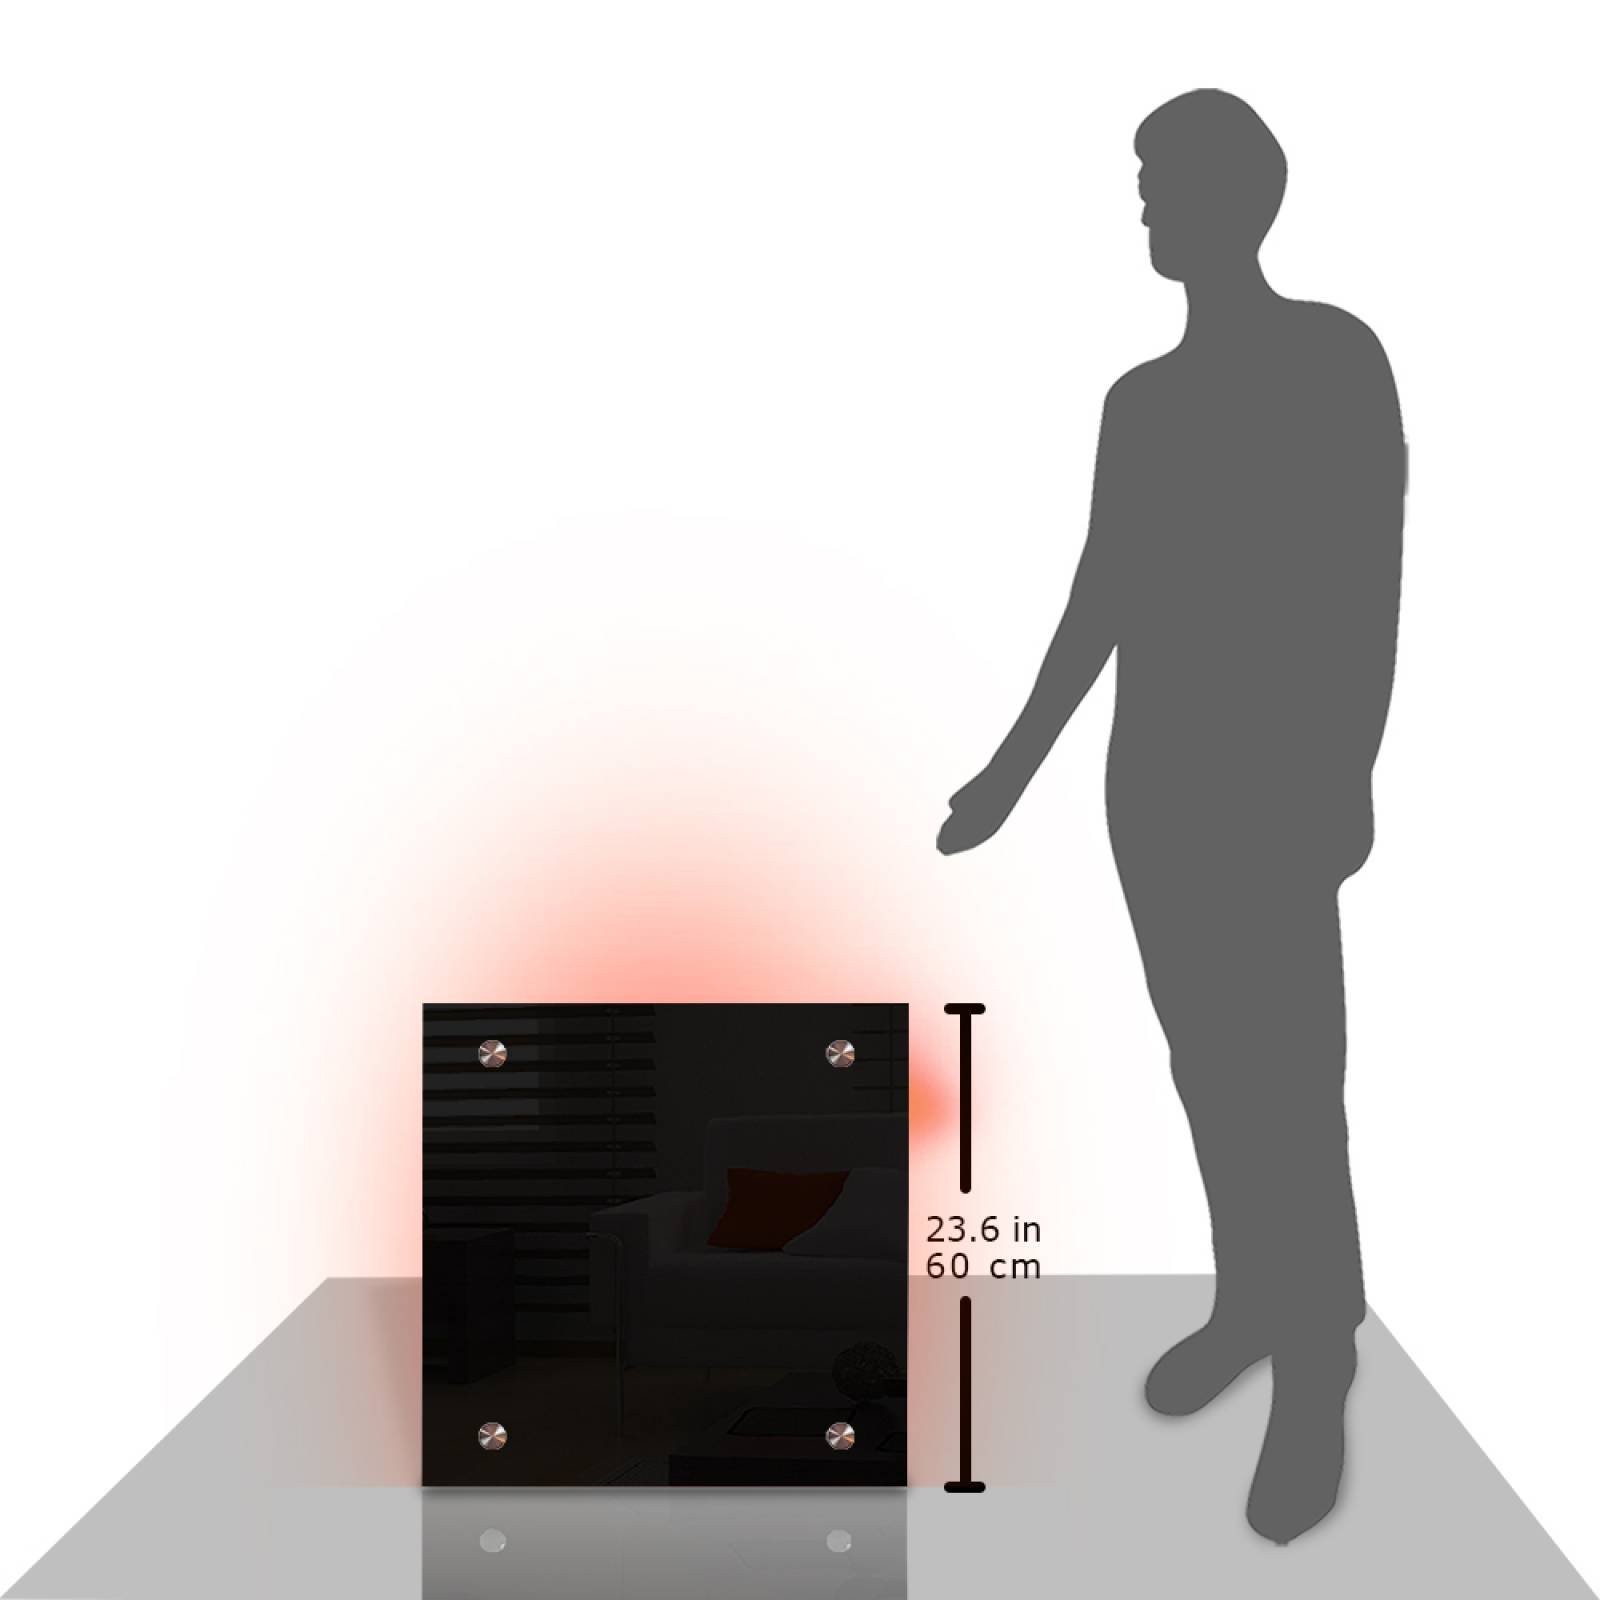 Calefactor de Panel infrarrojo en Cristal para Techo, Arizona Wave Black Star de 380W 60x60cm, Mod: 342CaSol-TN